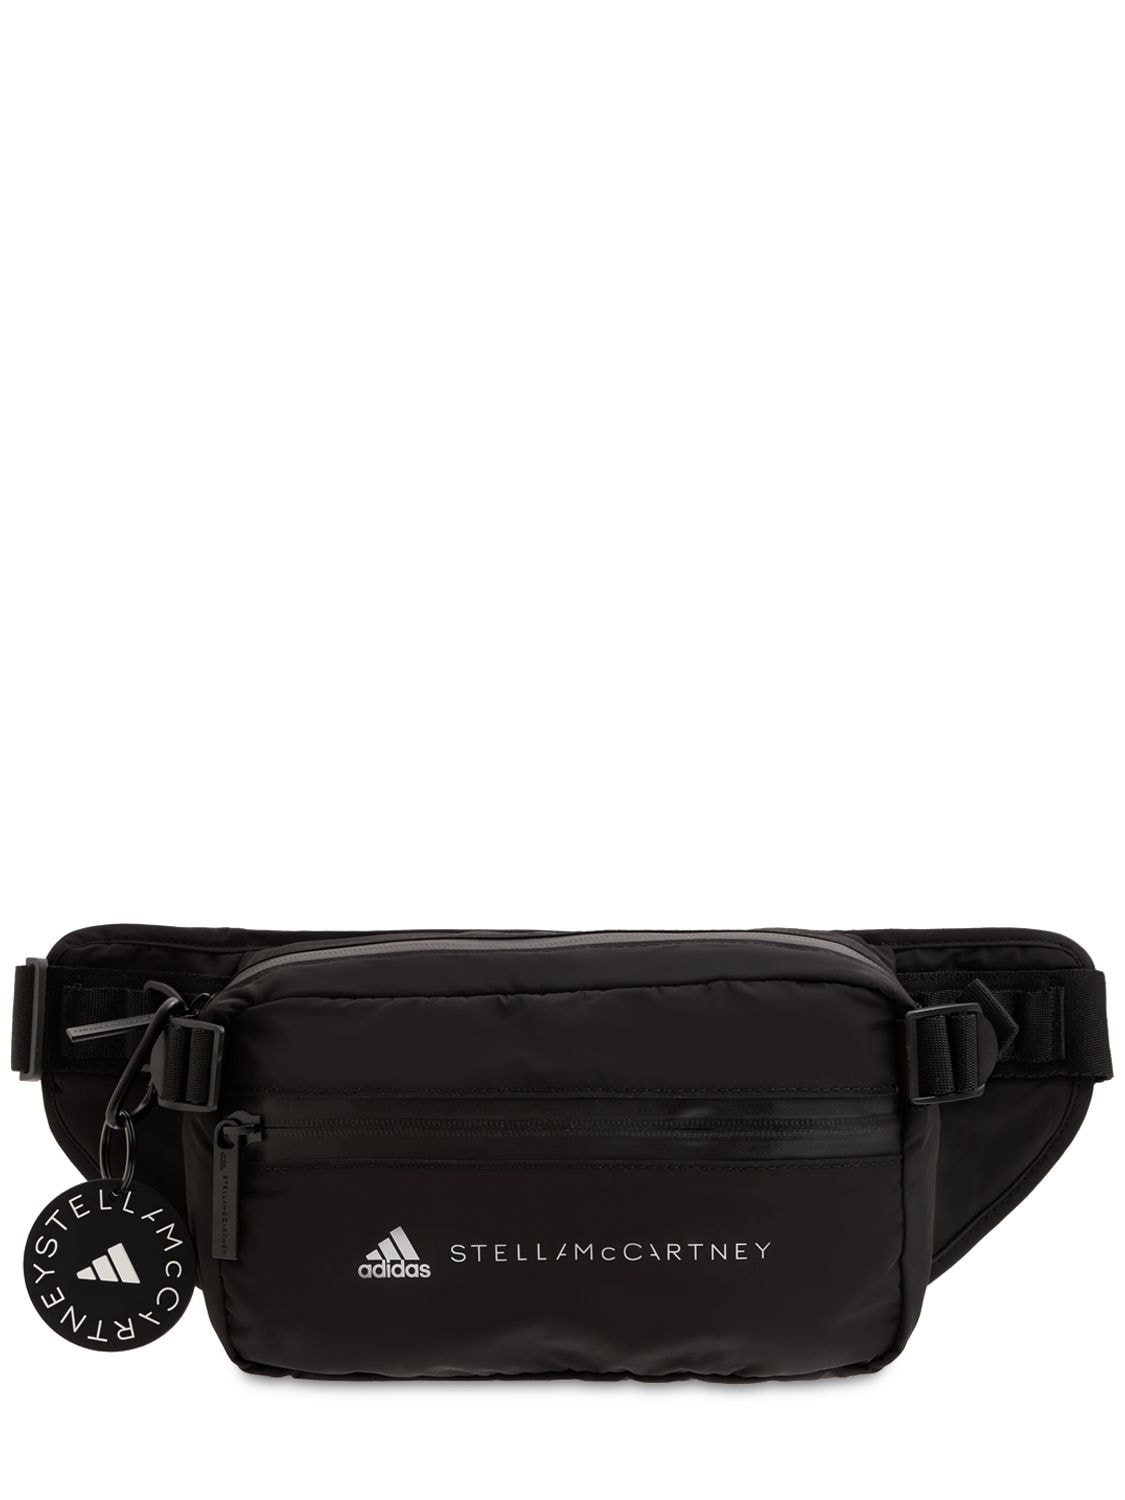 Adidas By Stella Mccartney Asmc Belt Bag In Black